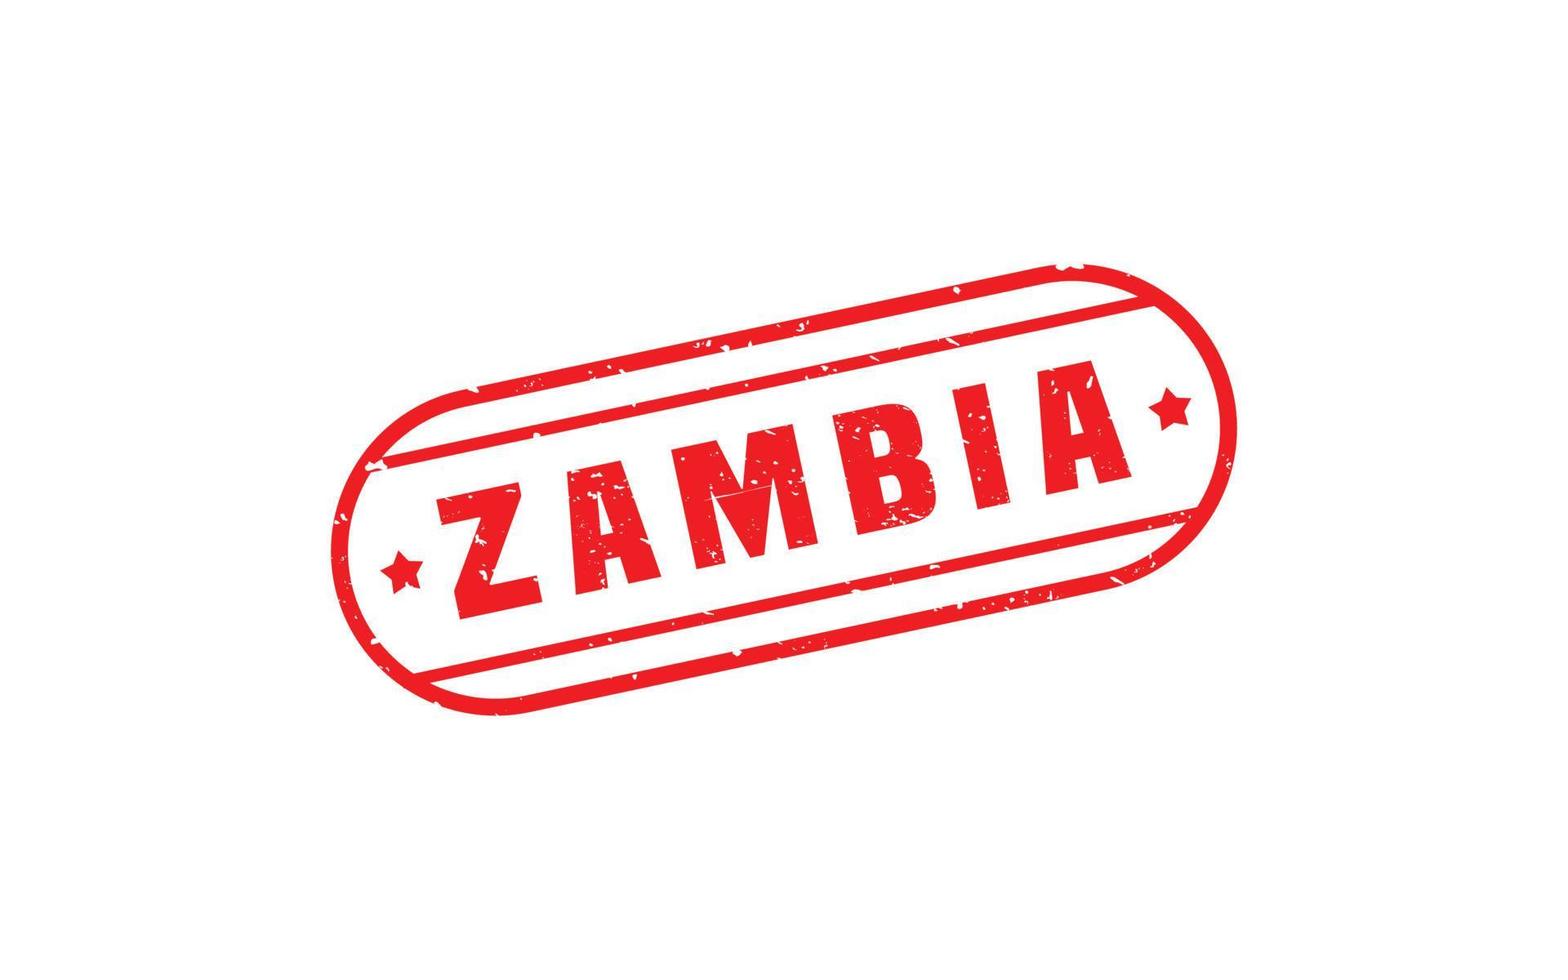 Zambia postzegel rubber met grunge stijl Aan wit achtergrond vector